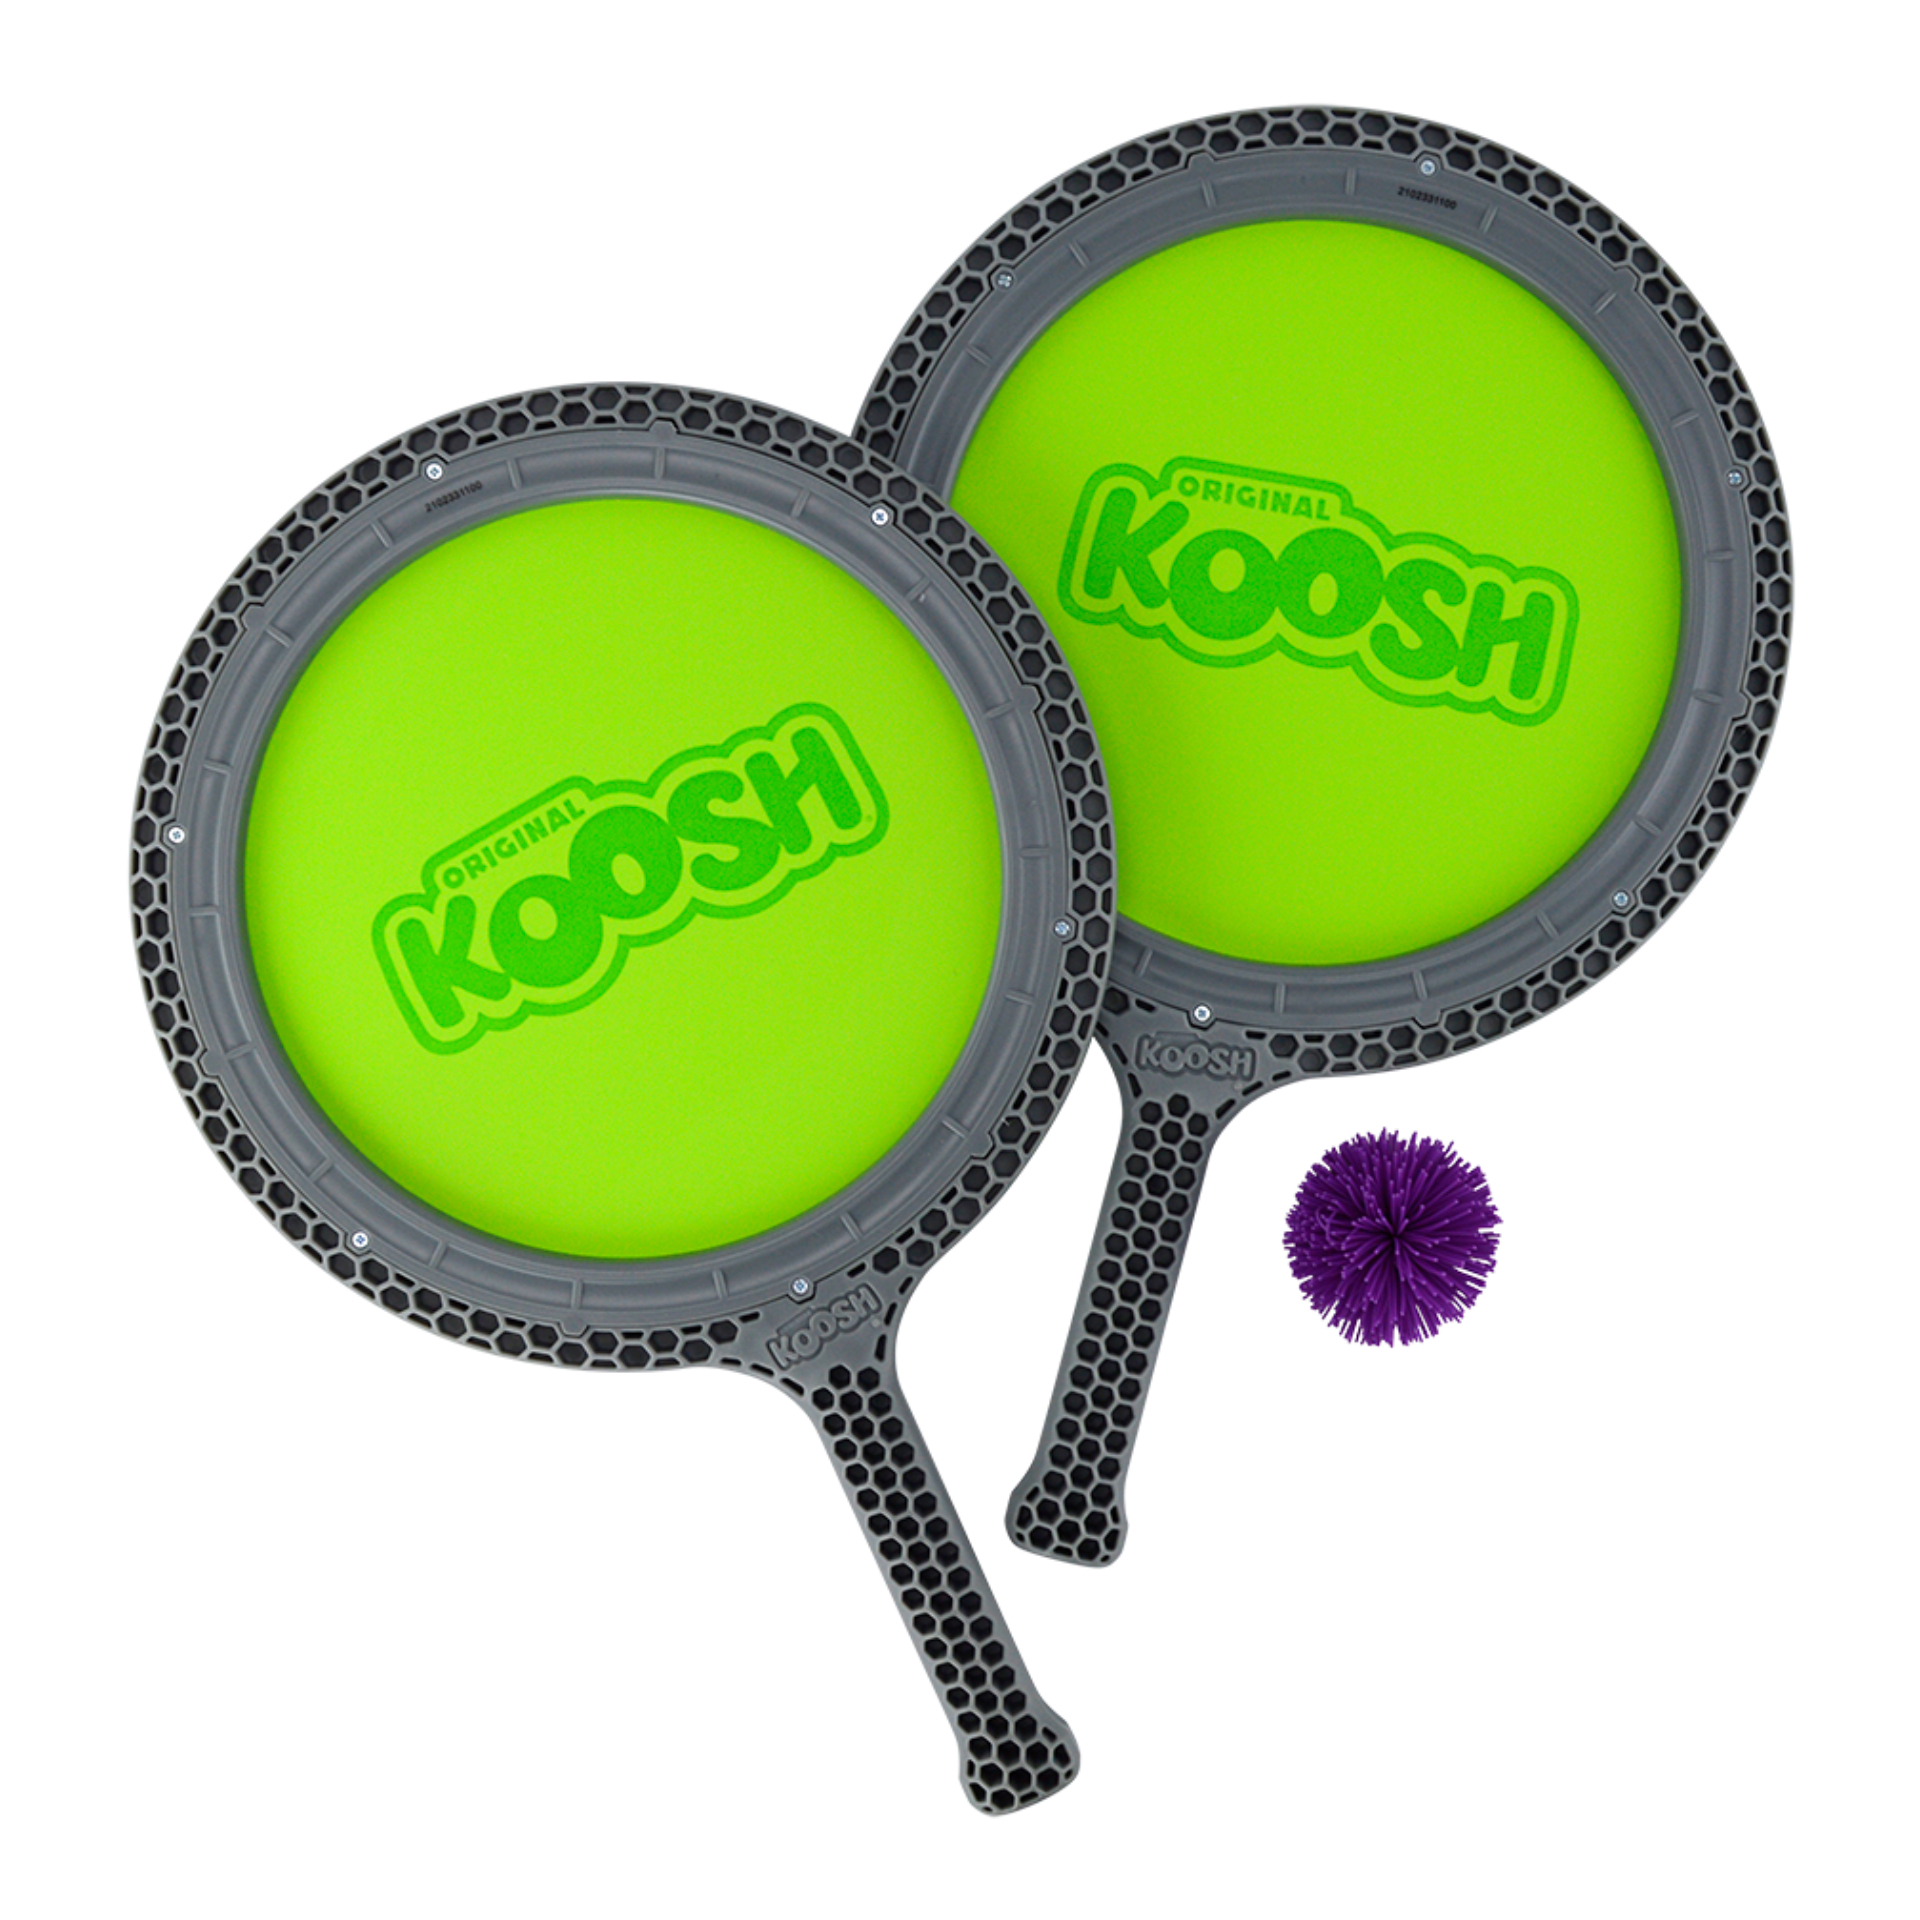 Koosh Double Paddle Play Set